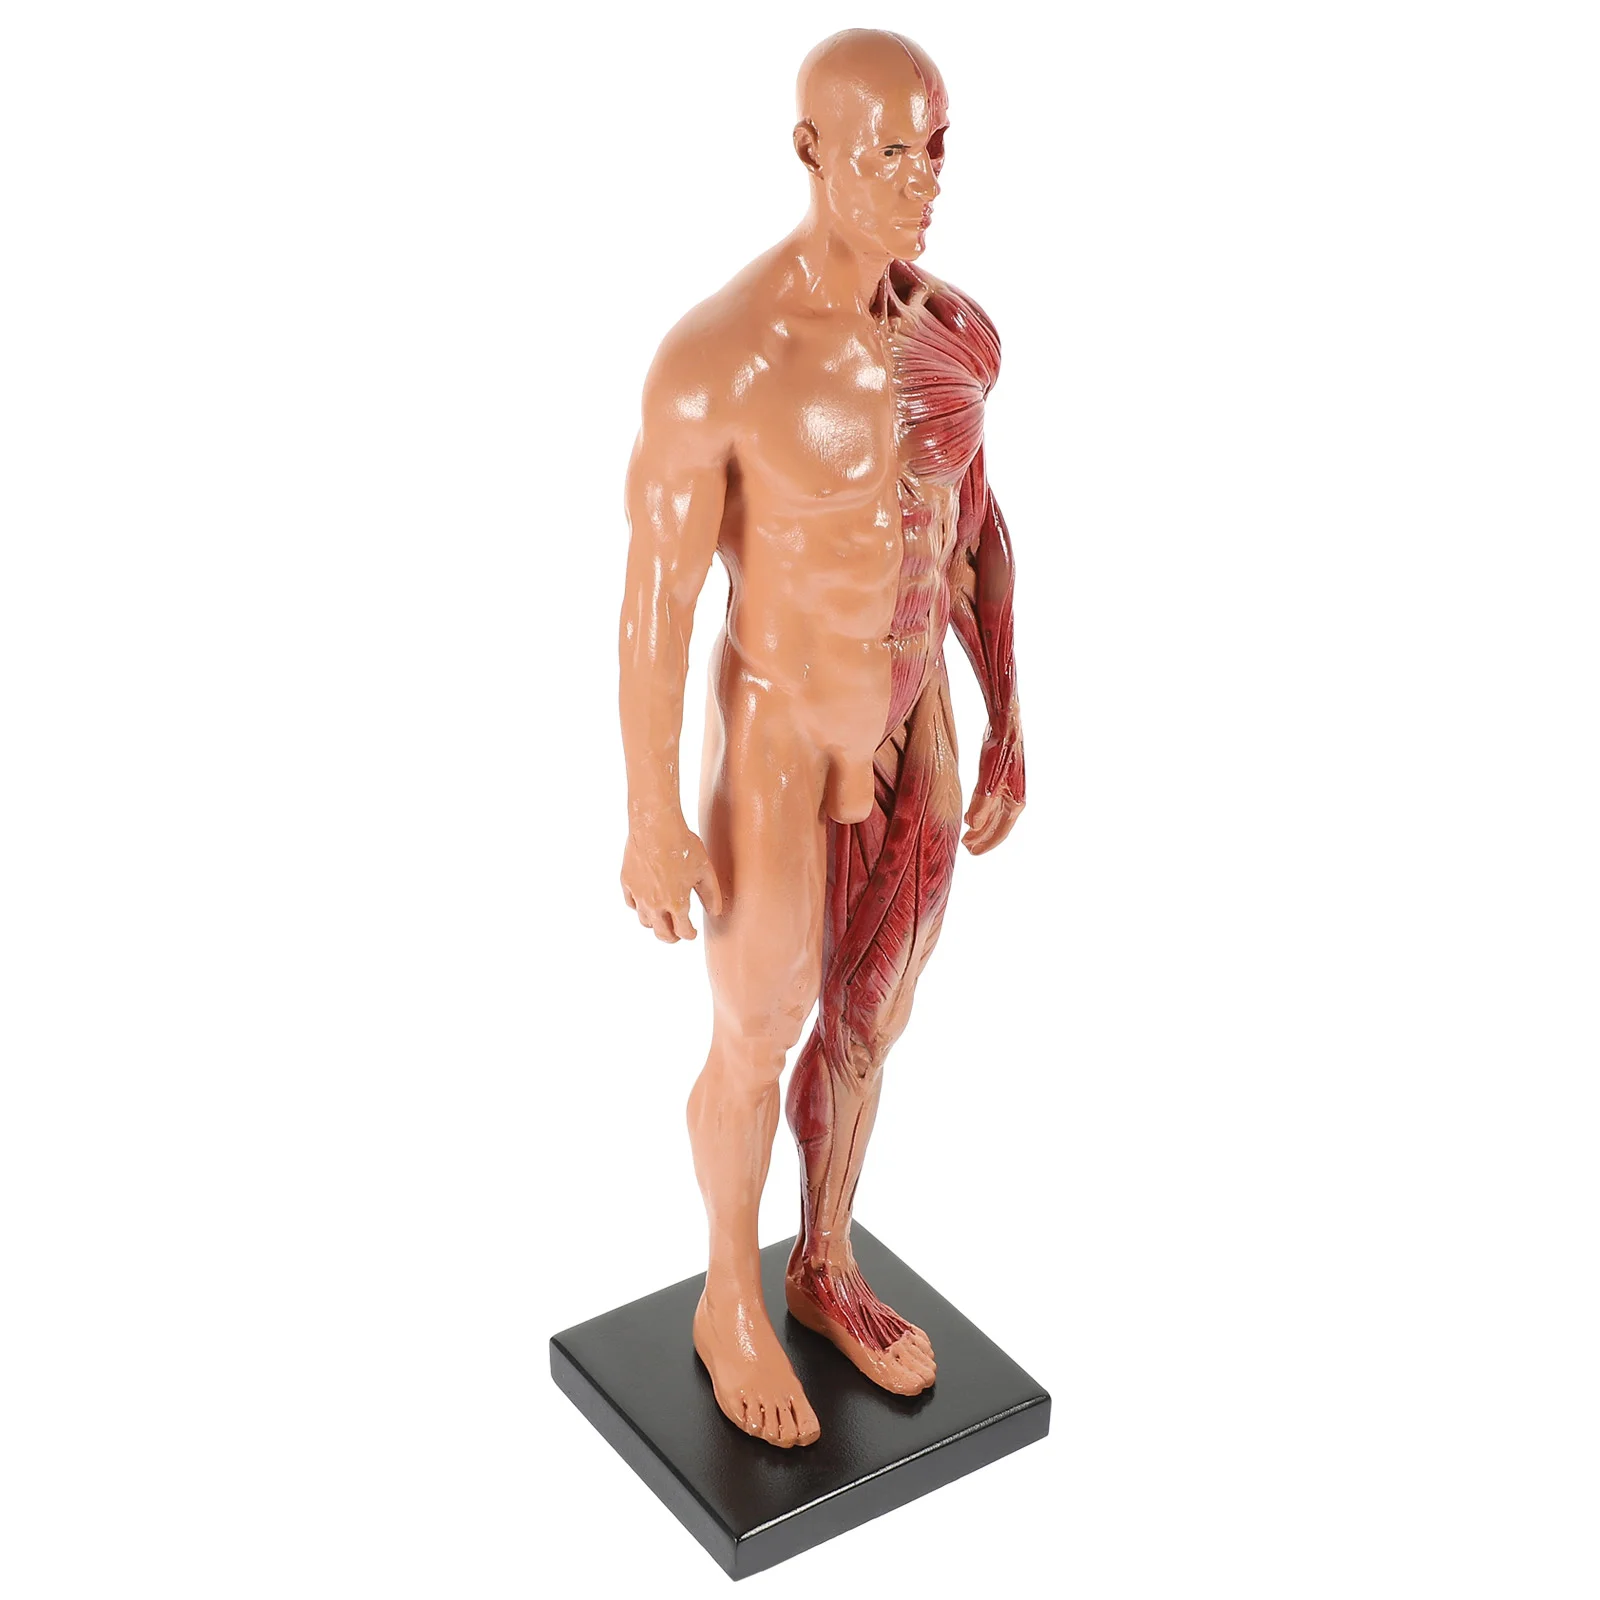 

Манекен CG, живопись, скульптура, структура мышц, модель, инструменты, мини-модель человеческого тела, анатомический доктор, обучение, художник, рисование, манекен